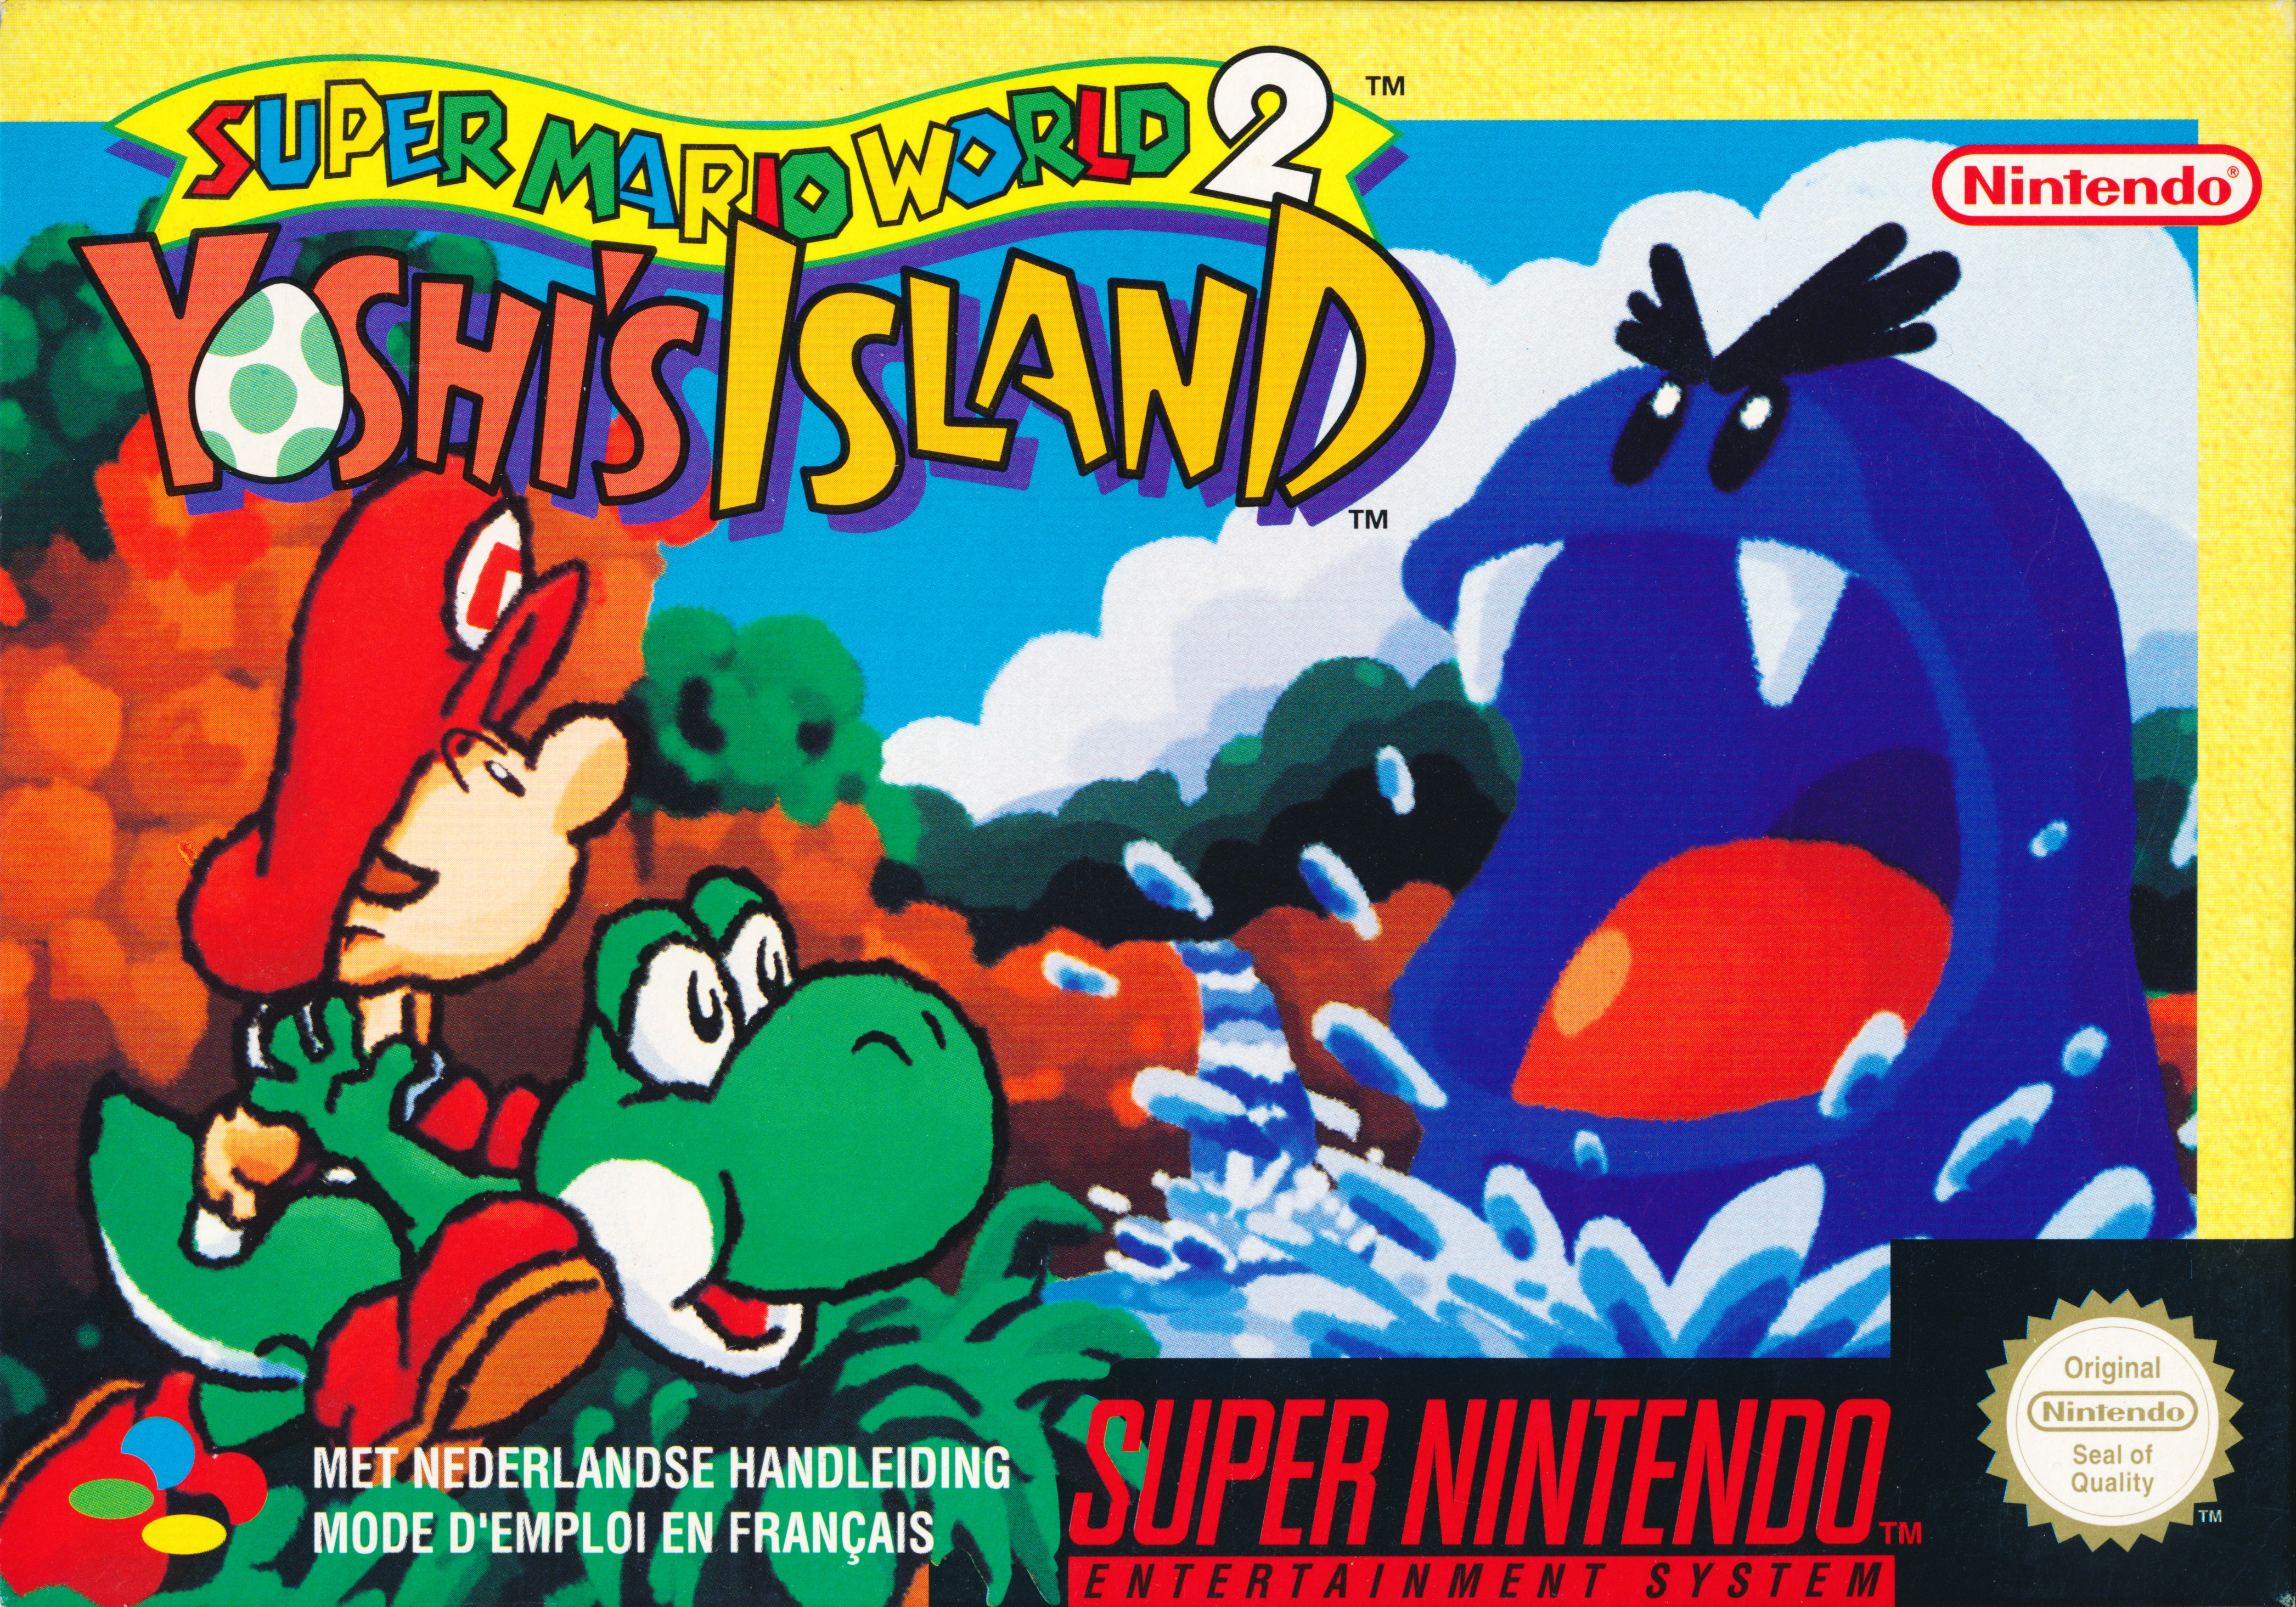 Mario yoshi island. Super Mario World 2 - Yoshi's Island Snes. Super Mario World 2 Snes. Super Mario World супер Нинтендо. Super Mario World 2 Yoshis Island.